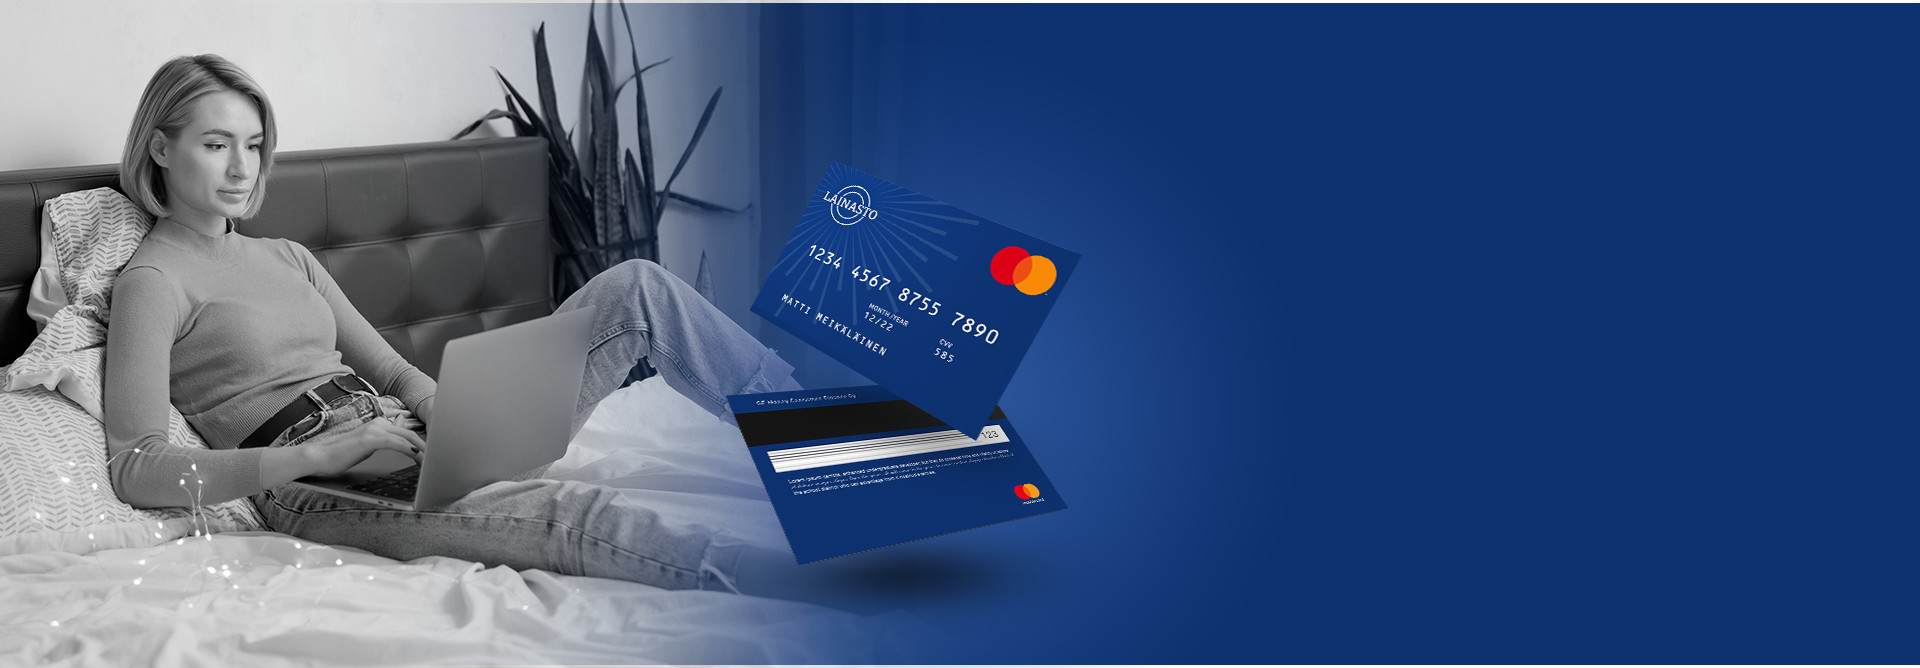 Lainasto Mastercard luottokortti - luottoraja aluksi 500€